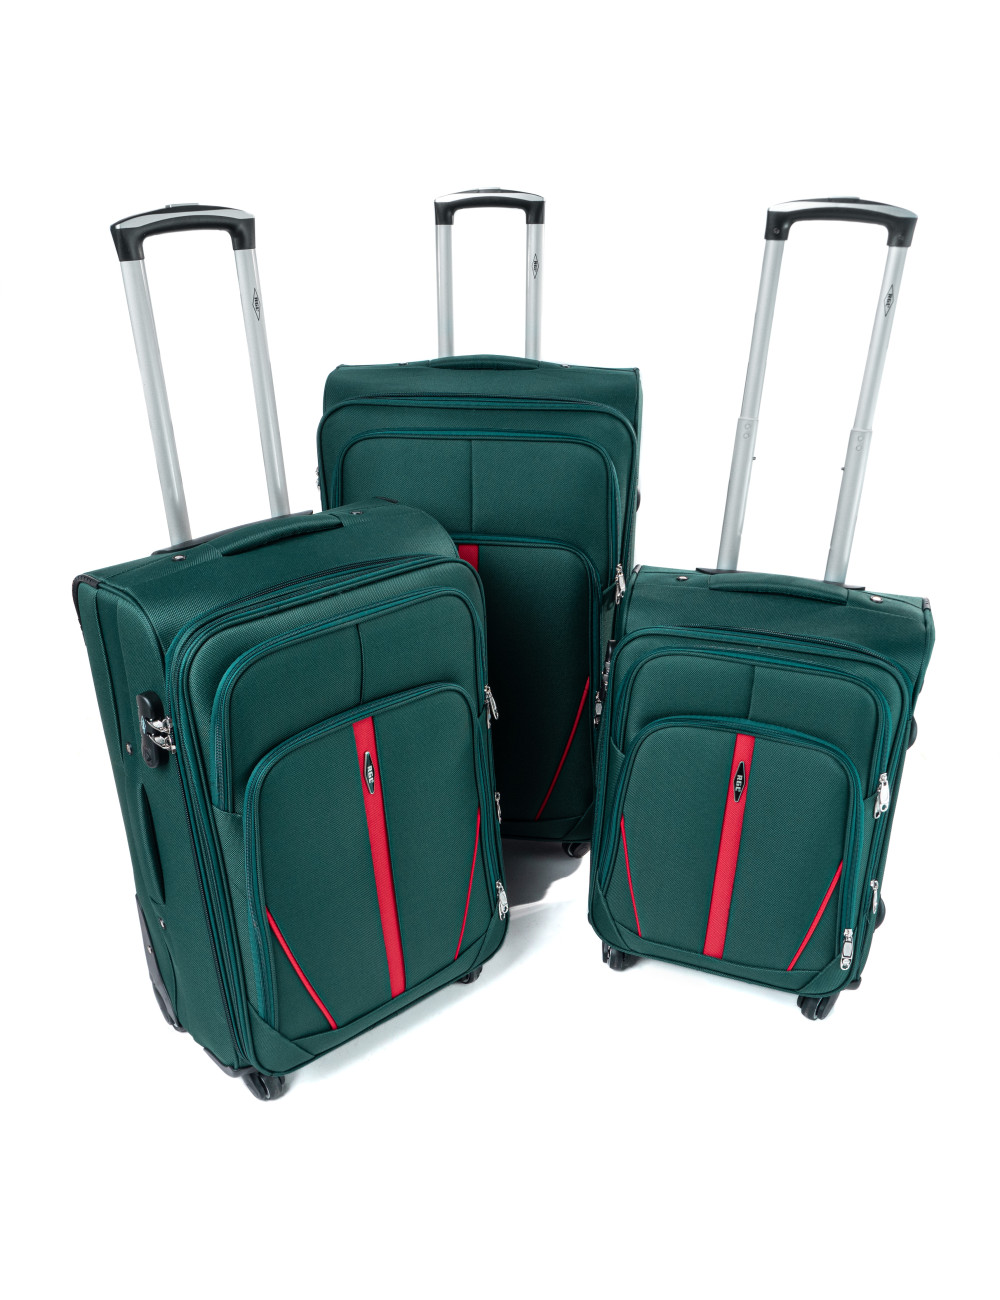 Zestaw walizek podróżnych na kółkach 3w1 S-020  XXL XL L - zielony